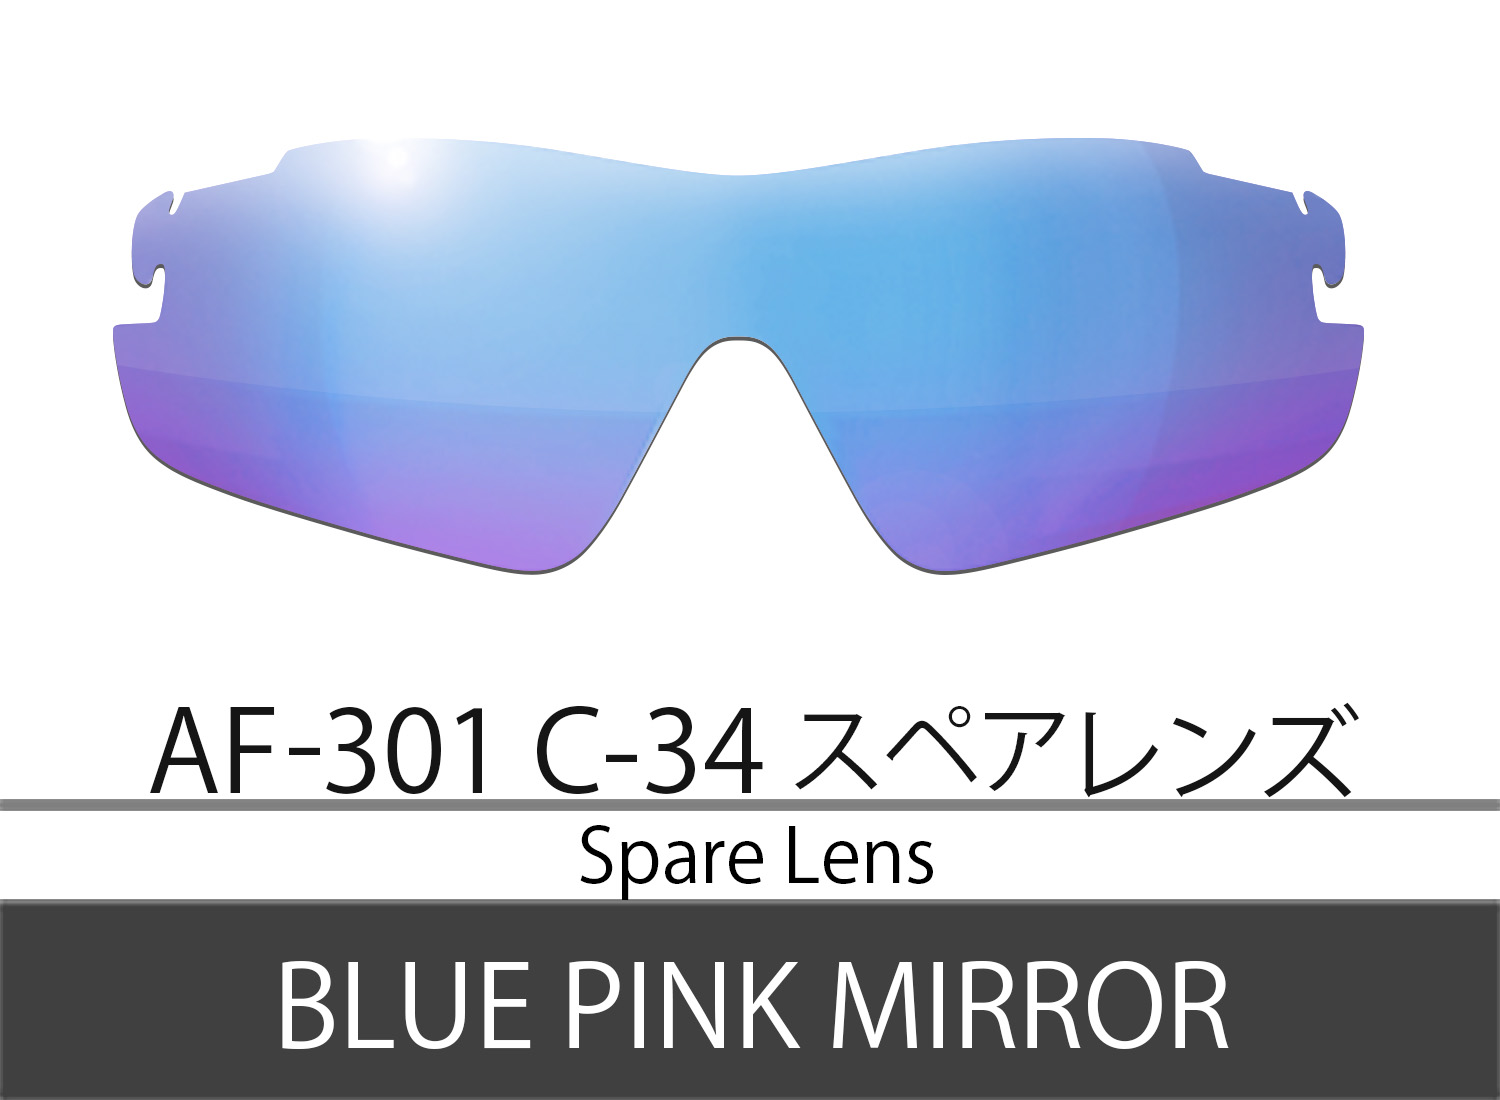 Spare Lens【AF-301 C-34 Blue Pink Mirror】